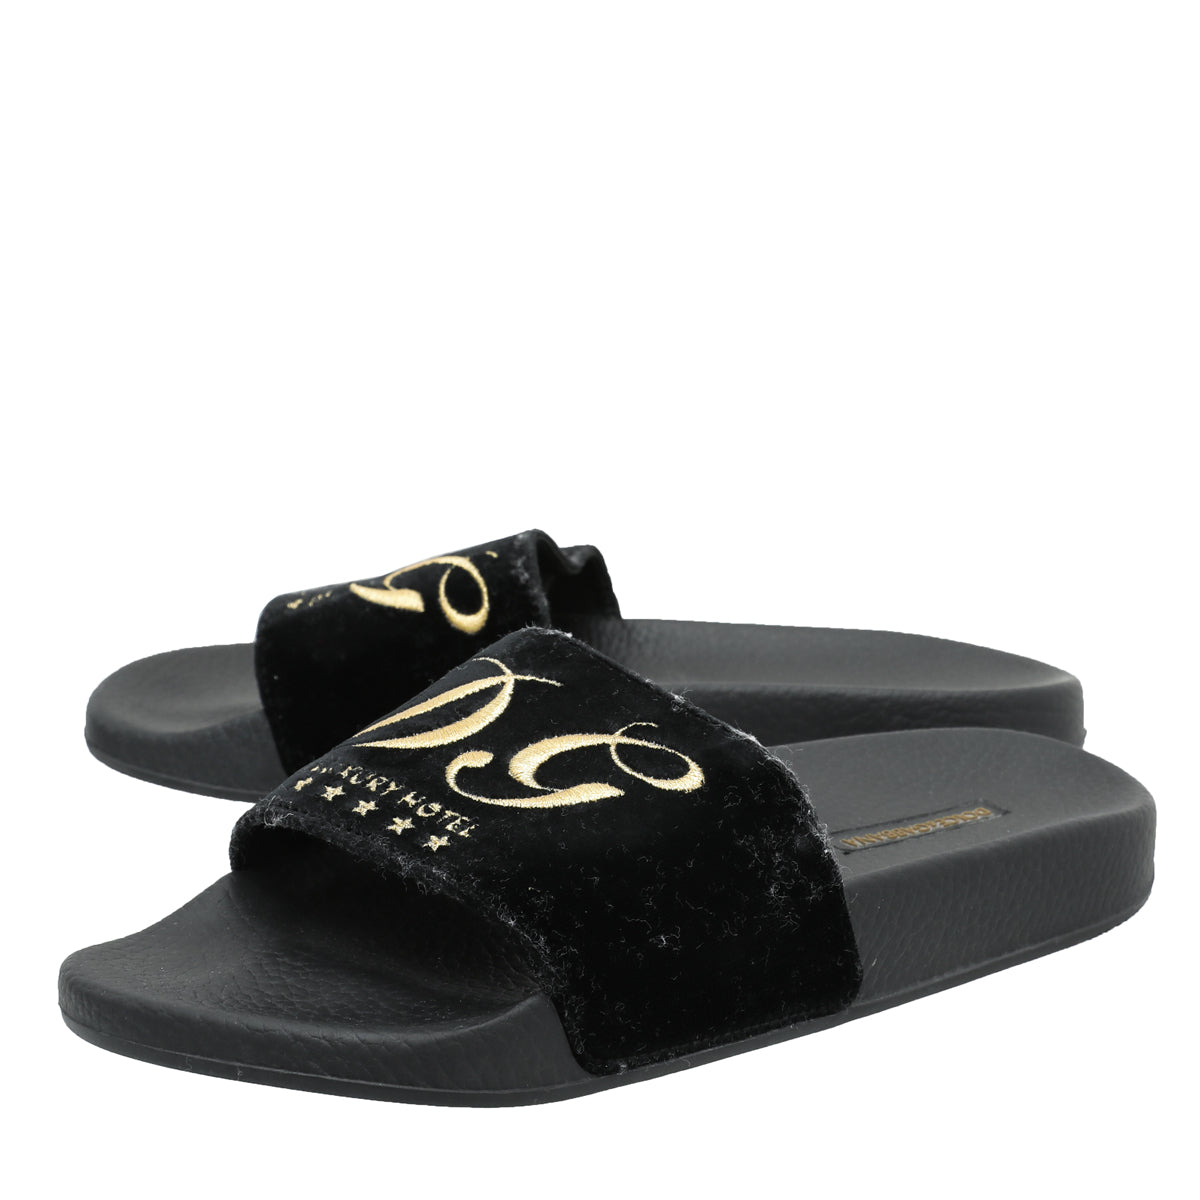 Dolce & Gabbana Black Velvet Luxury Hotel Slide Sandals 39